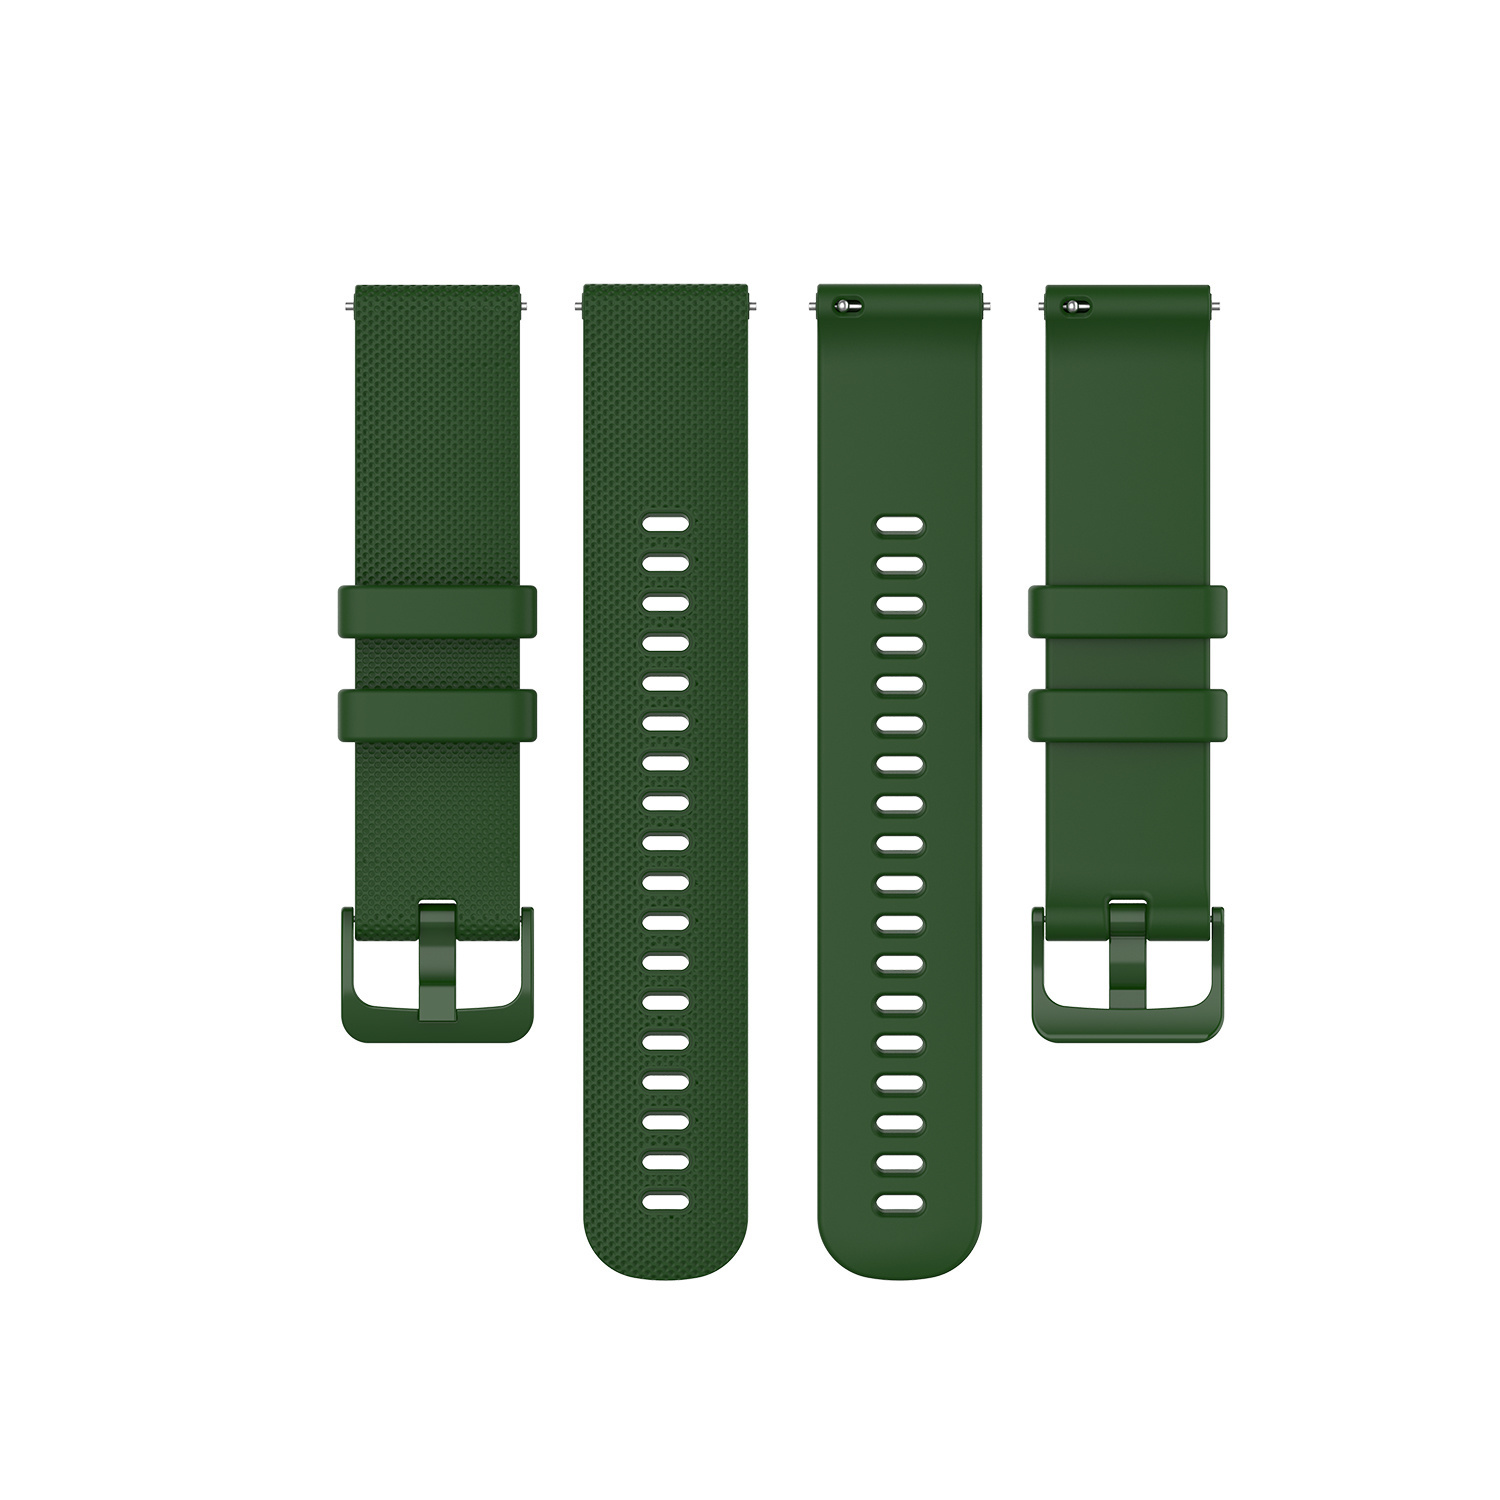 Cinturino sport con fibbia per Huawei Watch GT - verde